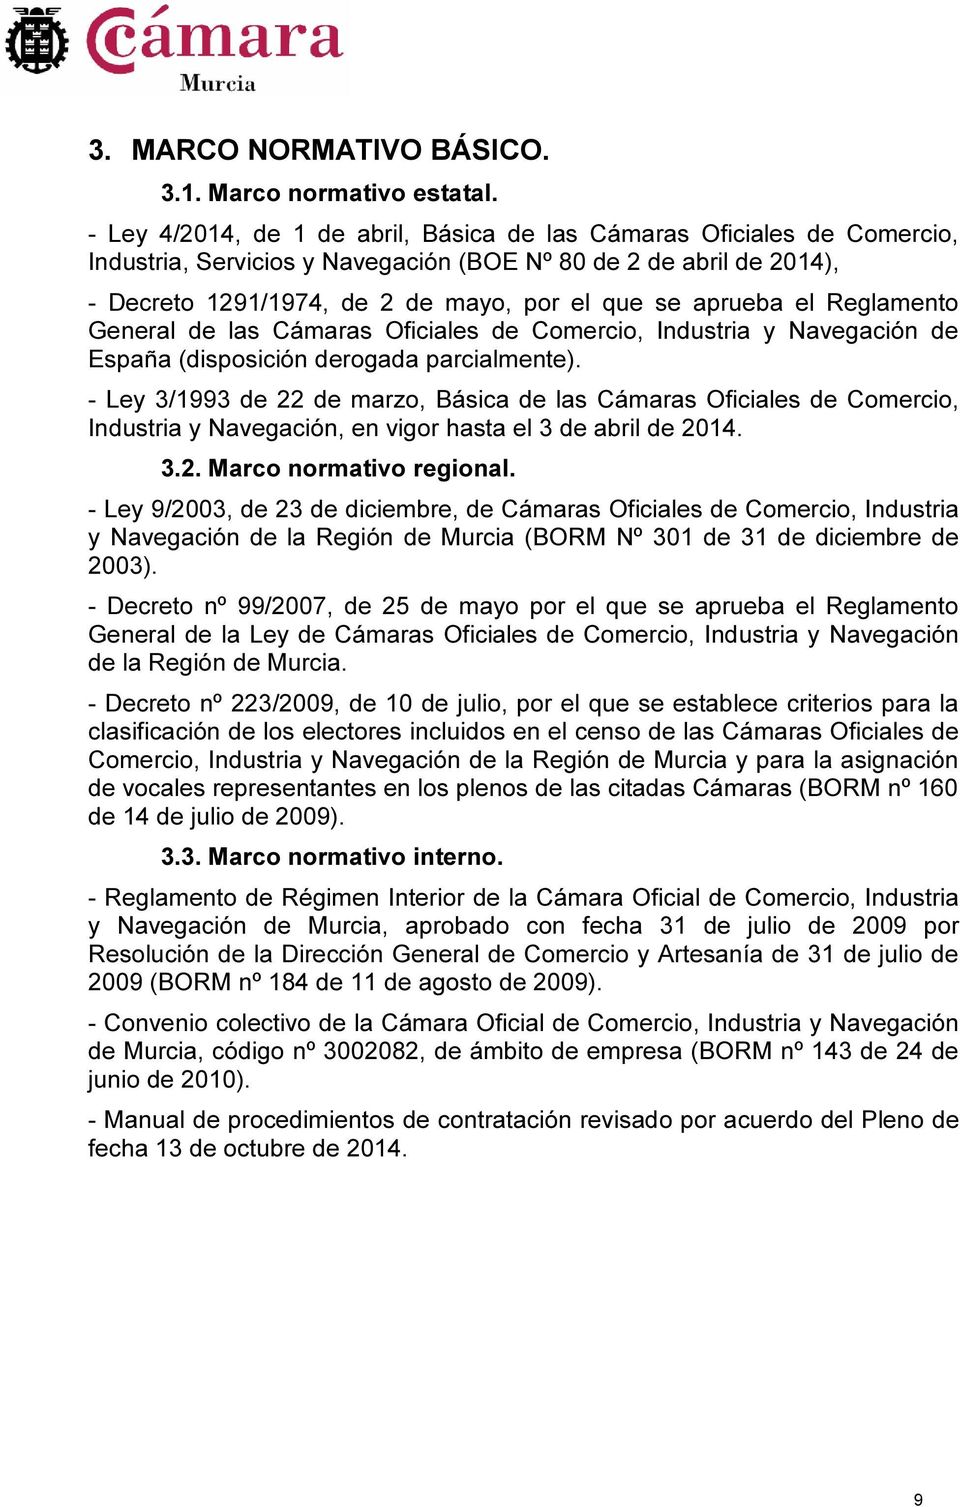 el Reglamento General de las Cámaras Oficiales de Comercio, Industria y Navegación de España (disposición derogada parcialmente).